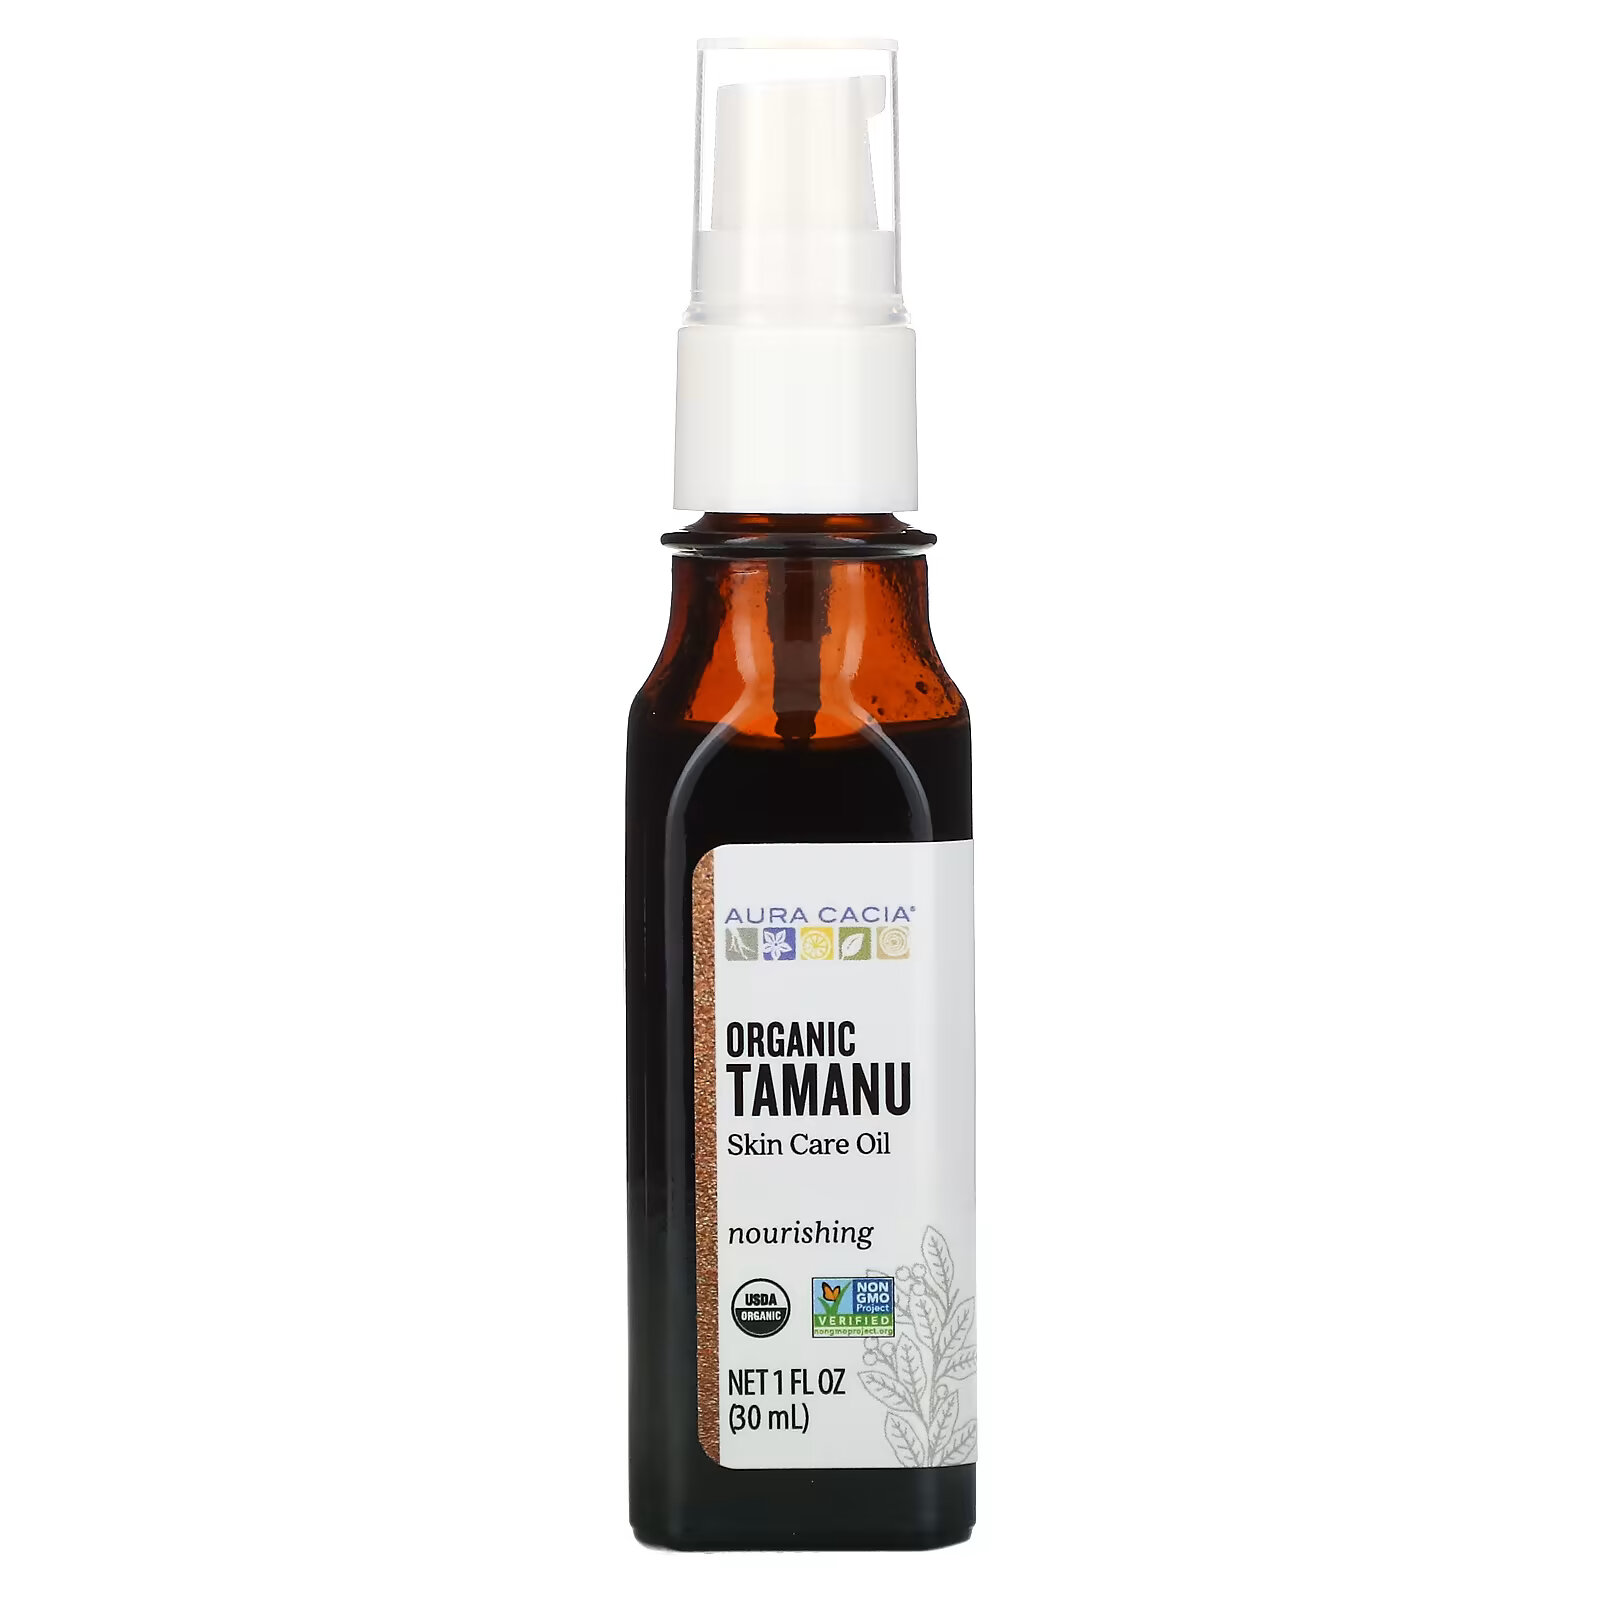 Органическое масло таману Aura Cacia для ухода за кожей, 30 мл масло жожоба aura cacia для ухода за кожей